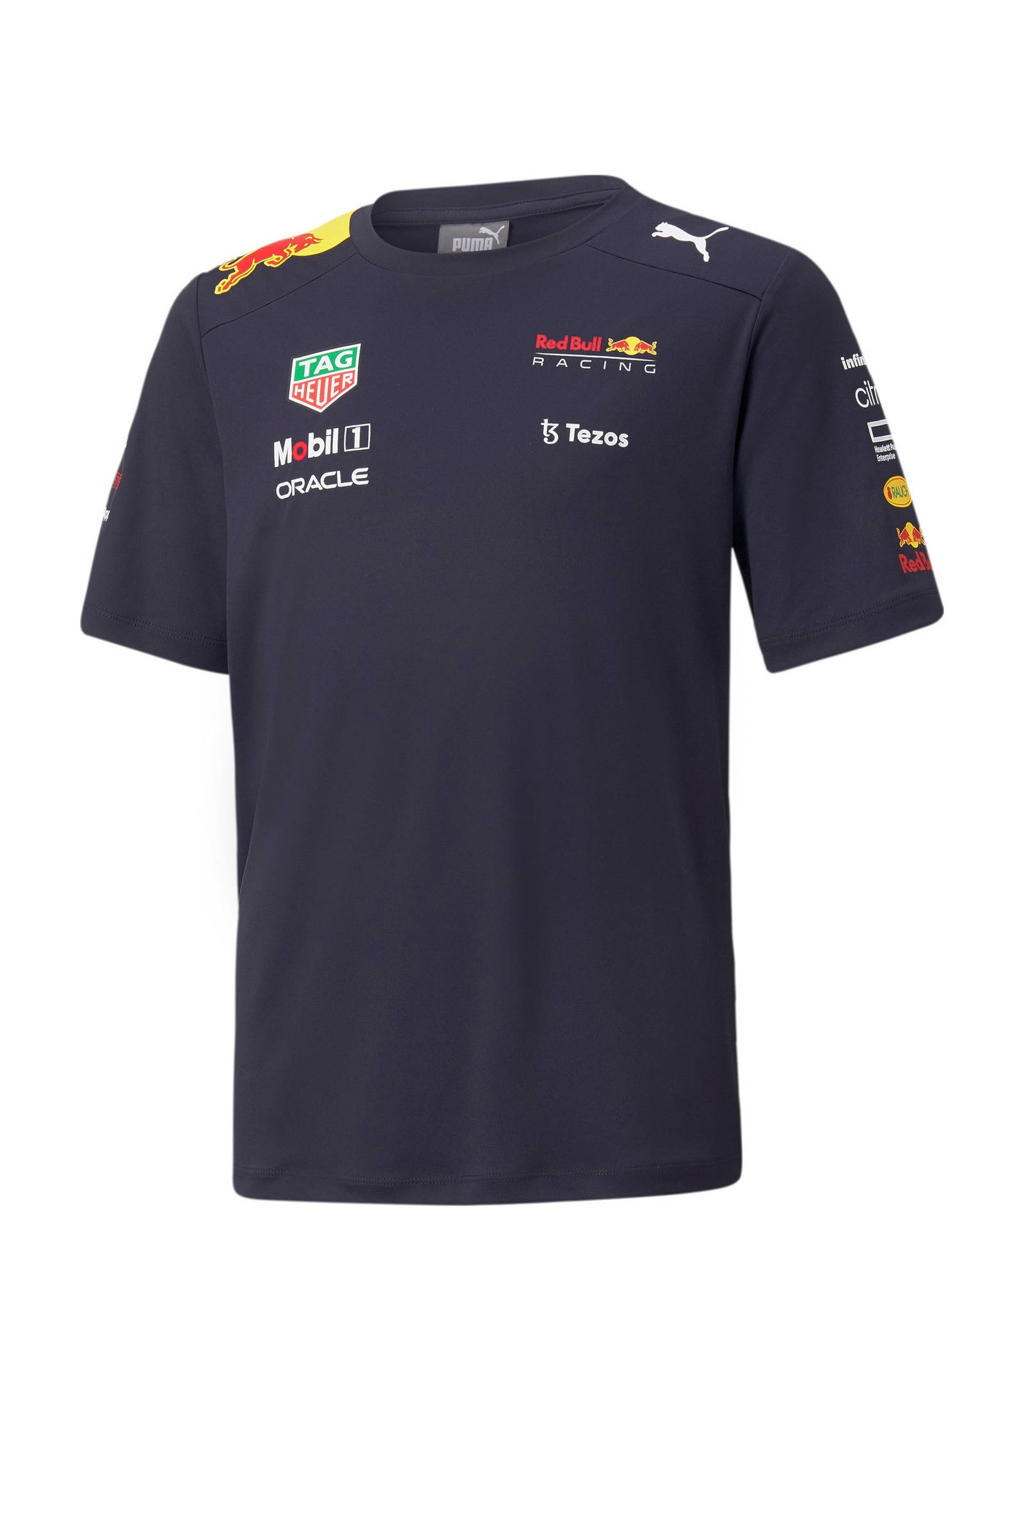 Puma Junior Red Bull Racing Team T-shirt donkerblauw